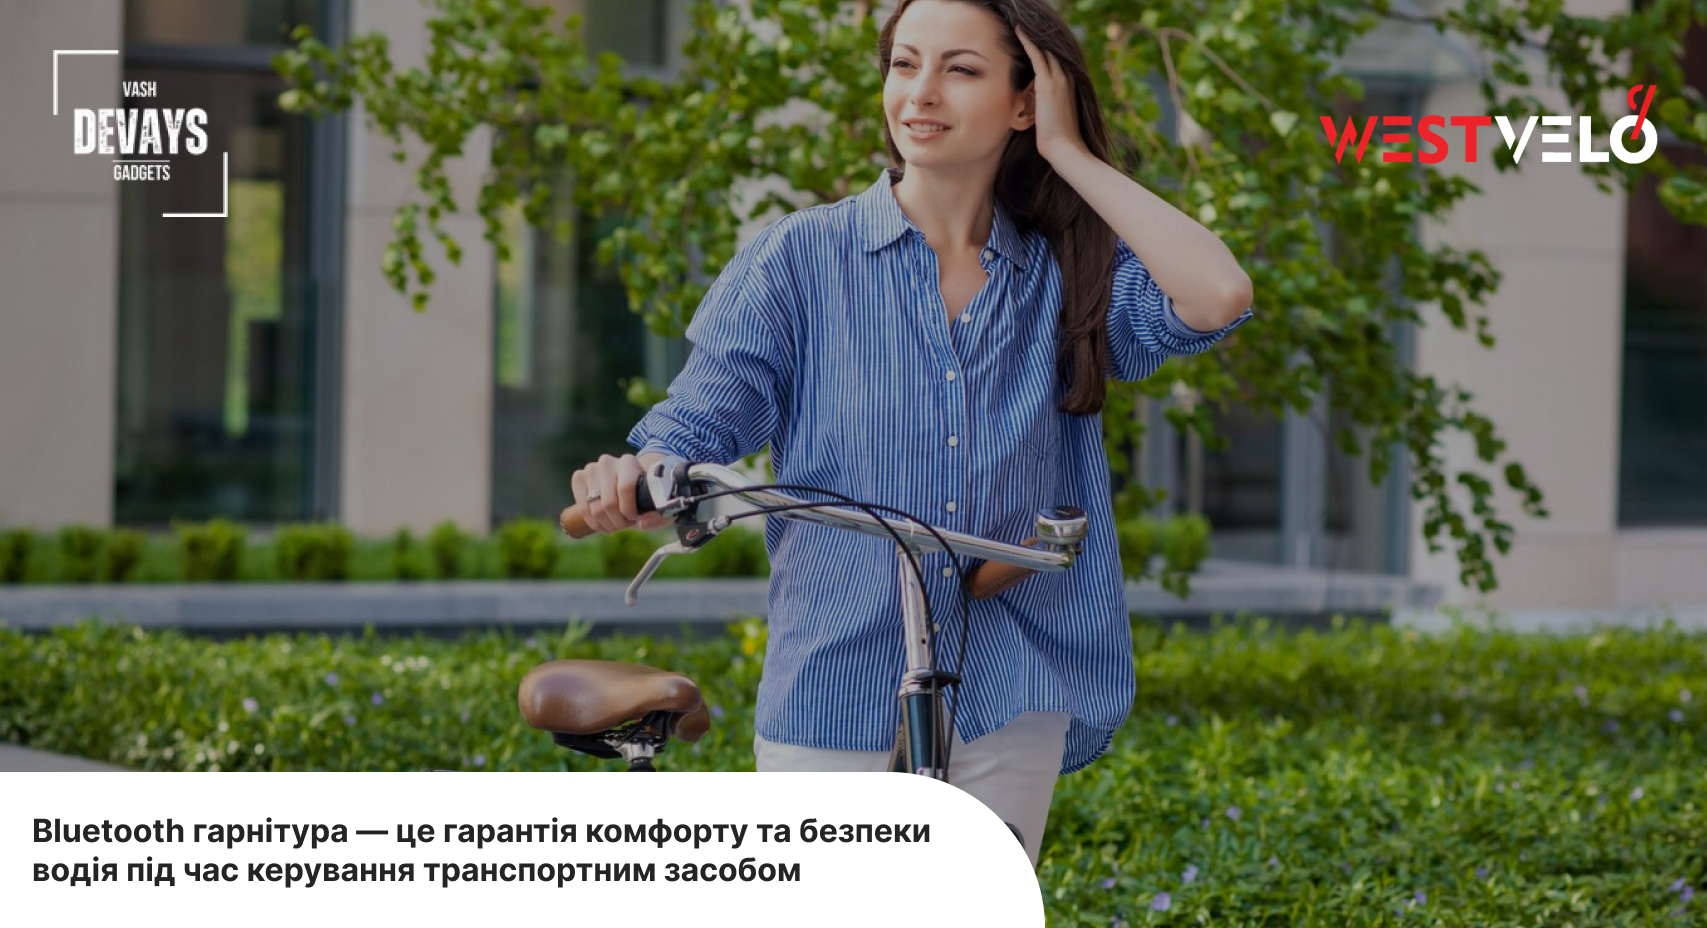 Купити Bluetooth гарнітуру для катання на велосипеді в інтернет-магазині VashDevays